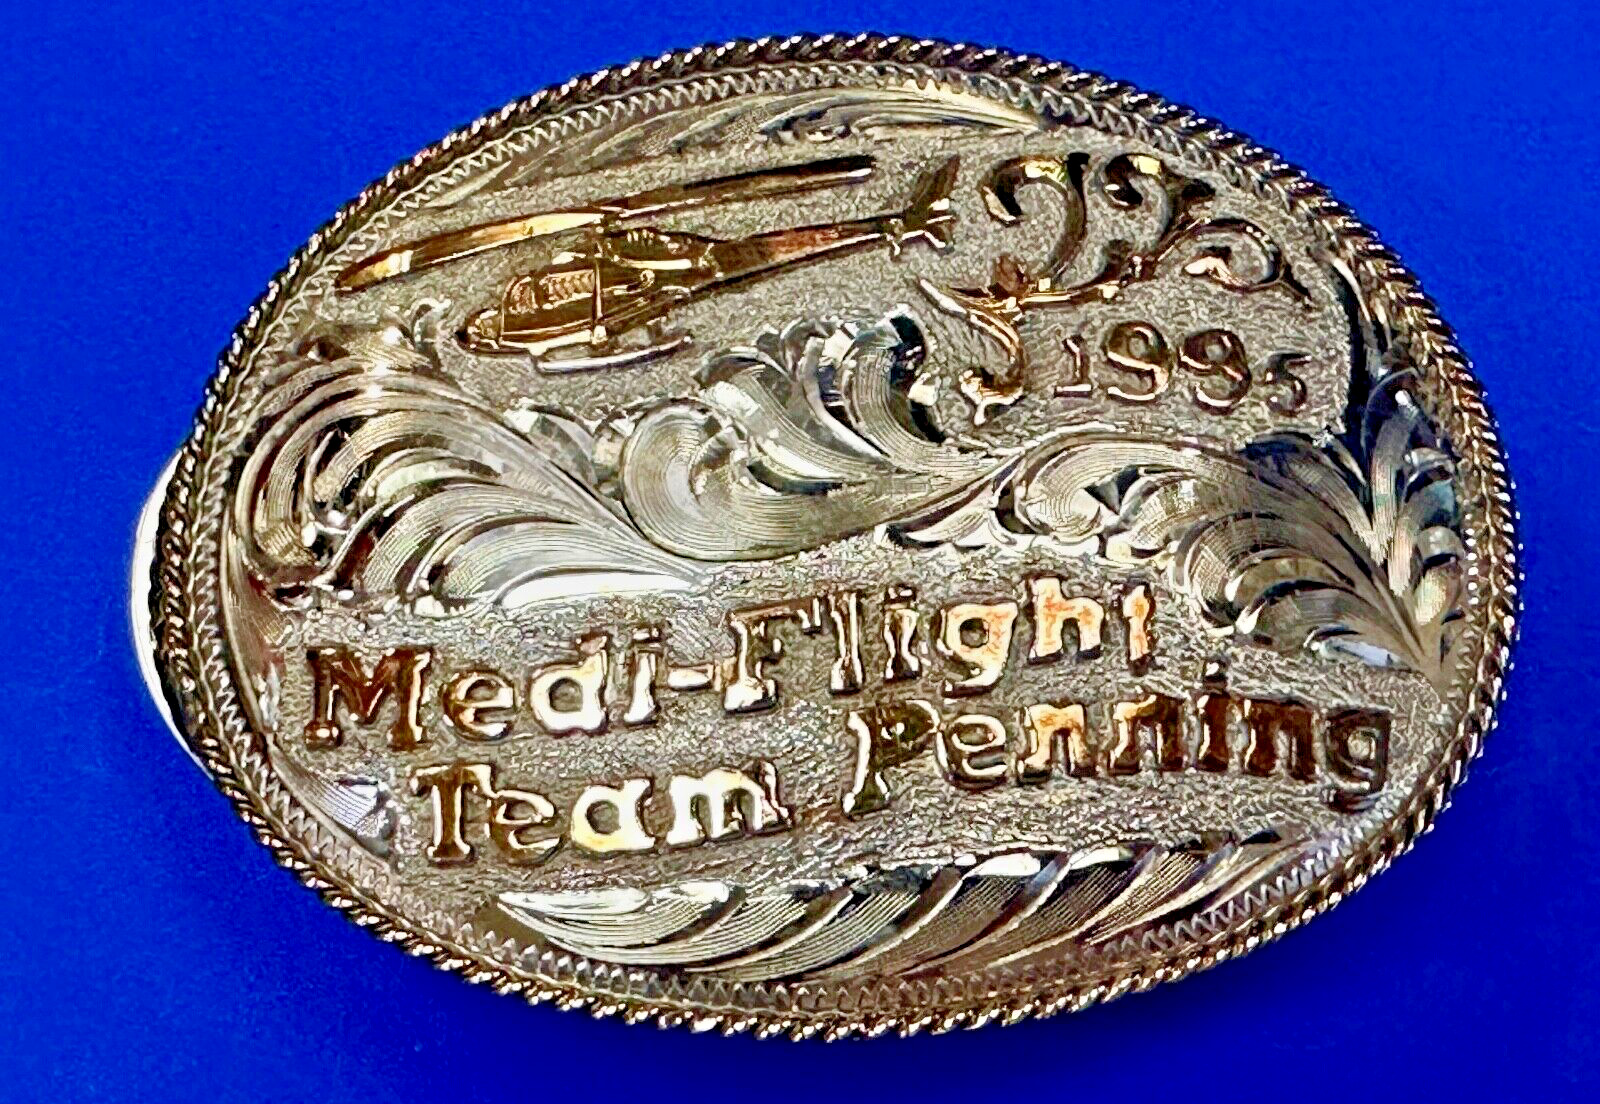 Medi Flight Team Penning 1995 OK Helicopter Trophy Limited Diablo belt buckle